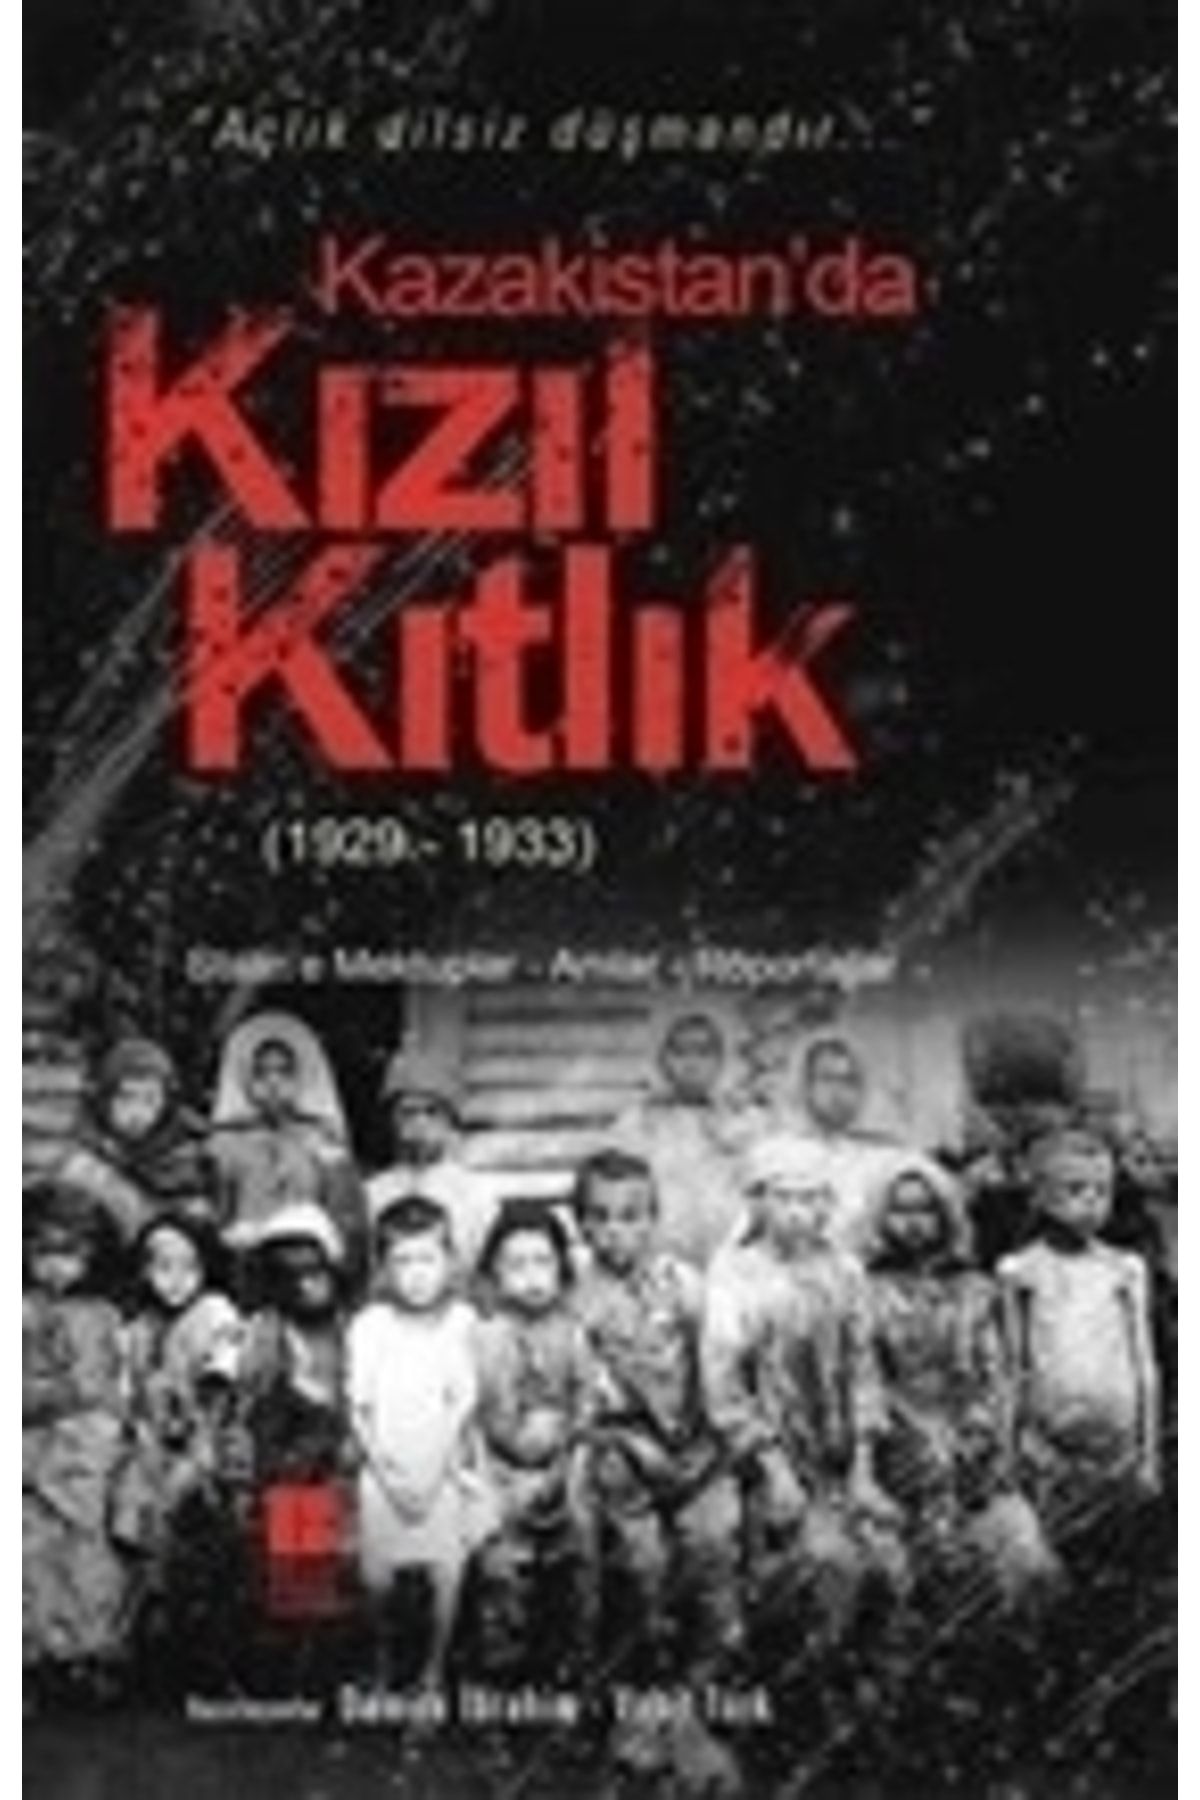 Genel Markalar Kazakistan da Kızıl Kıtlık (1929-1933)